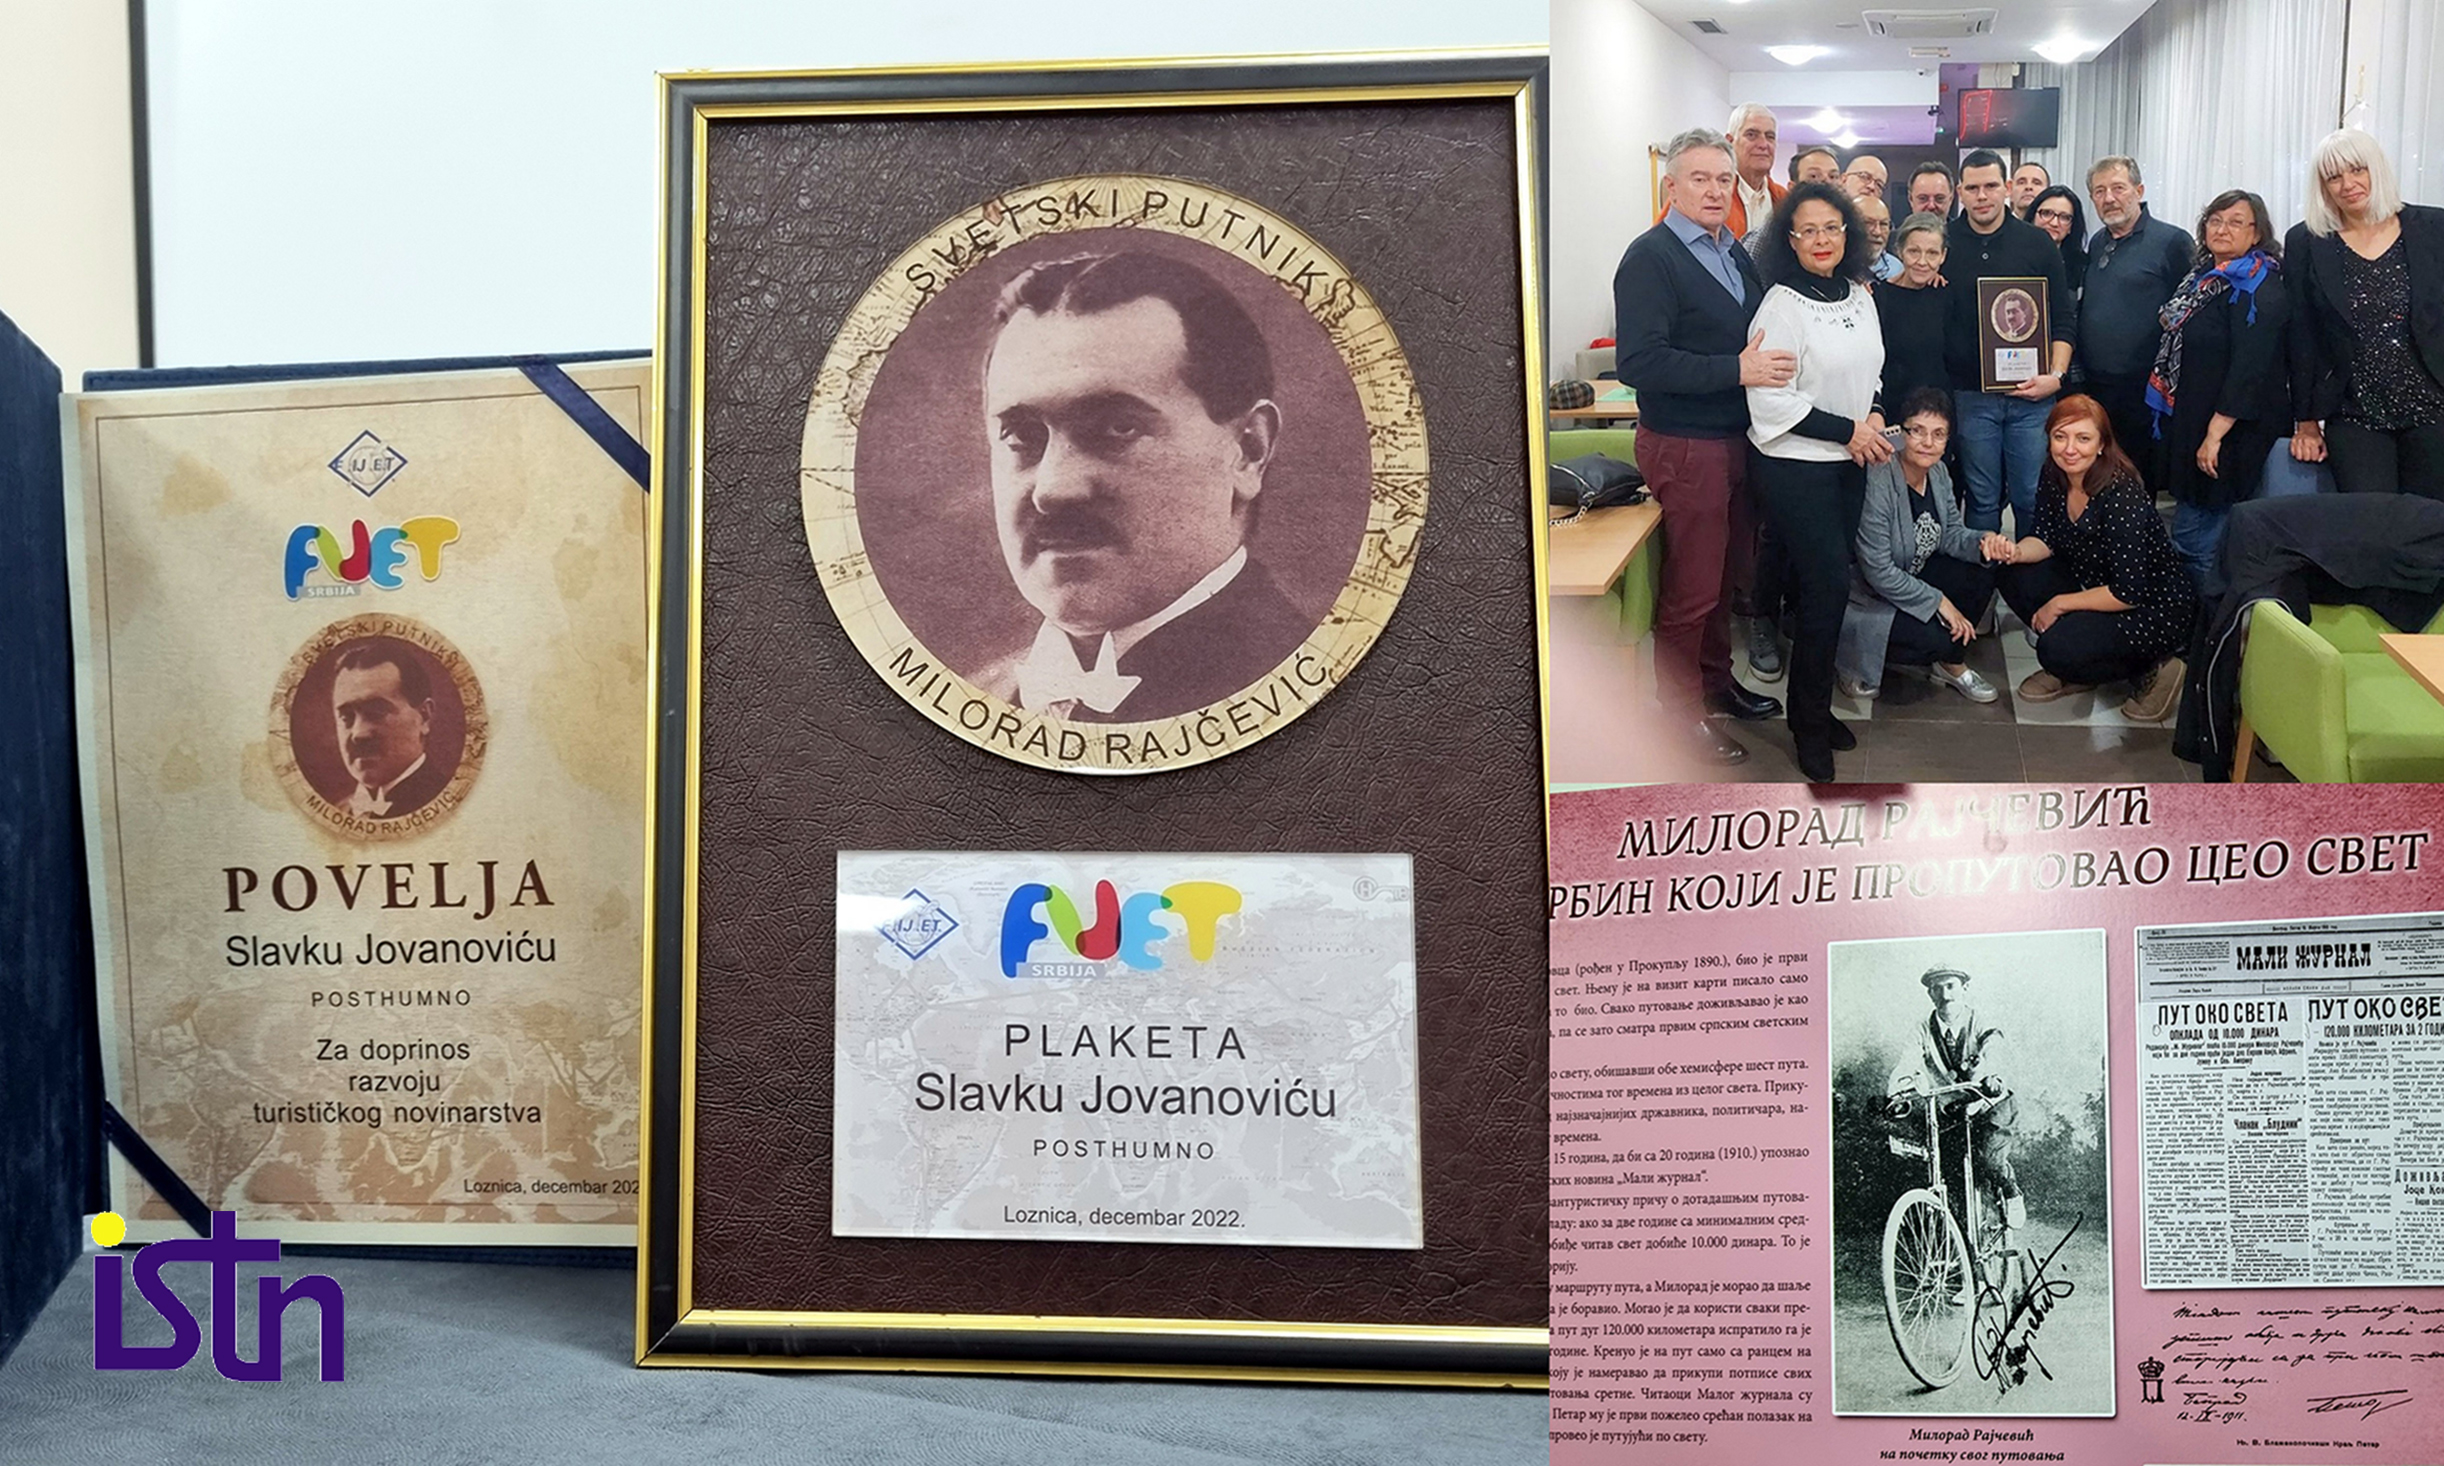 Plaketa FIJET Srbija, postuhmno dodeljena Slavku Jovanovicu, ISTN